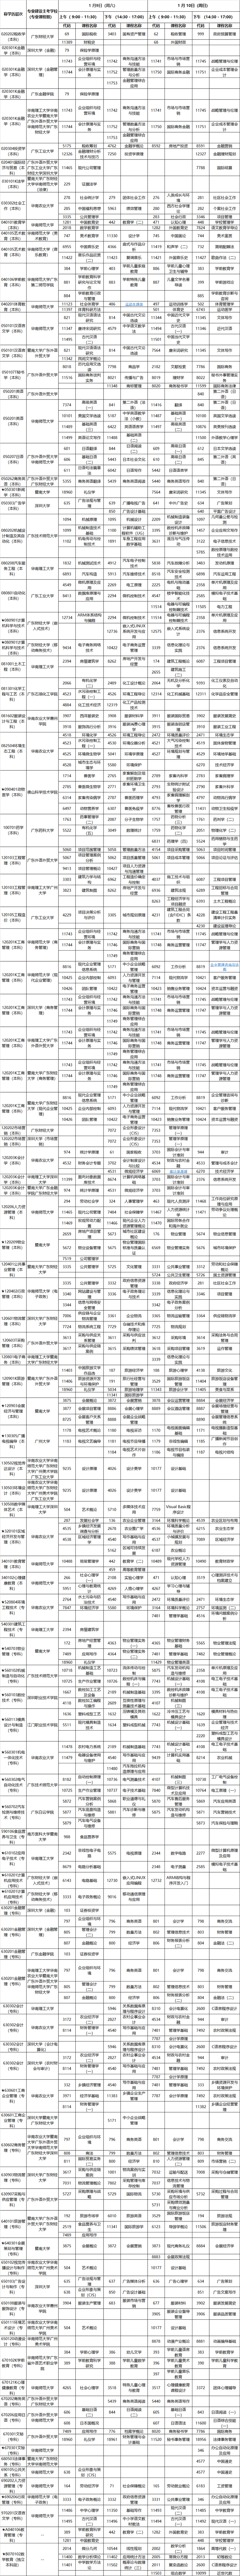 2021年1月广东成人教育各专业开考课程考试时间安排表